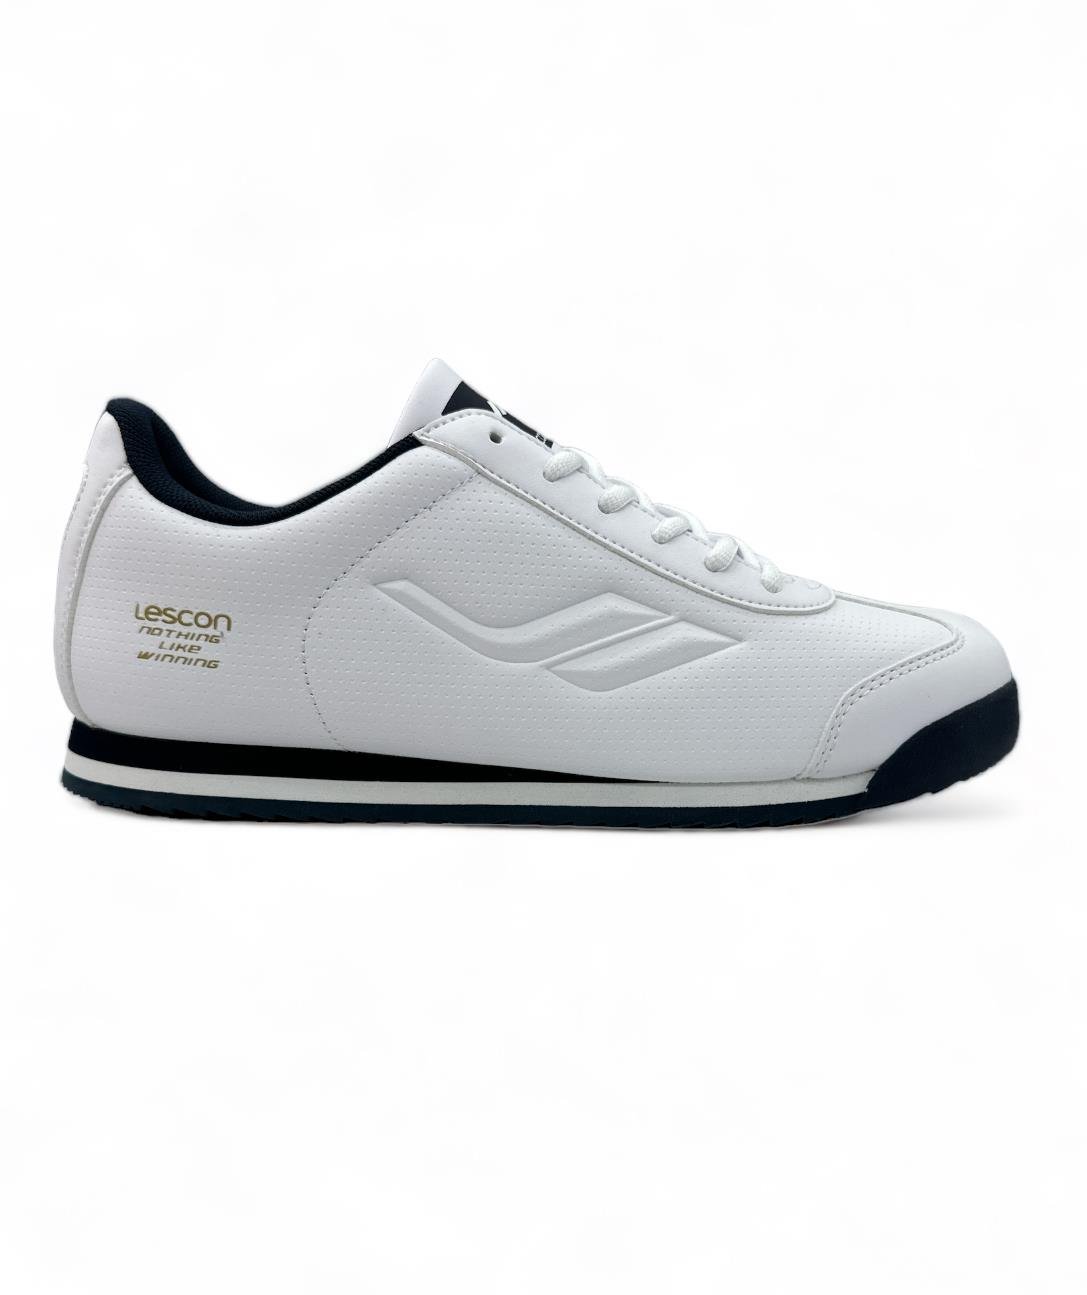 Europaspor.com'da LESCON Winner 8 Beyaz Erkek Sneaker Ayakkabı için en  uygun fiyatı bulabilirsin. Hemen tıkla, avantajlı fiyatlarla sneaker  ayakkabını satın al!